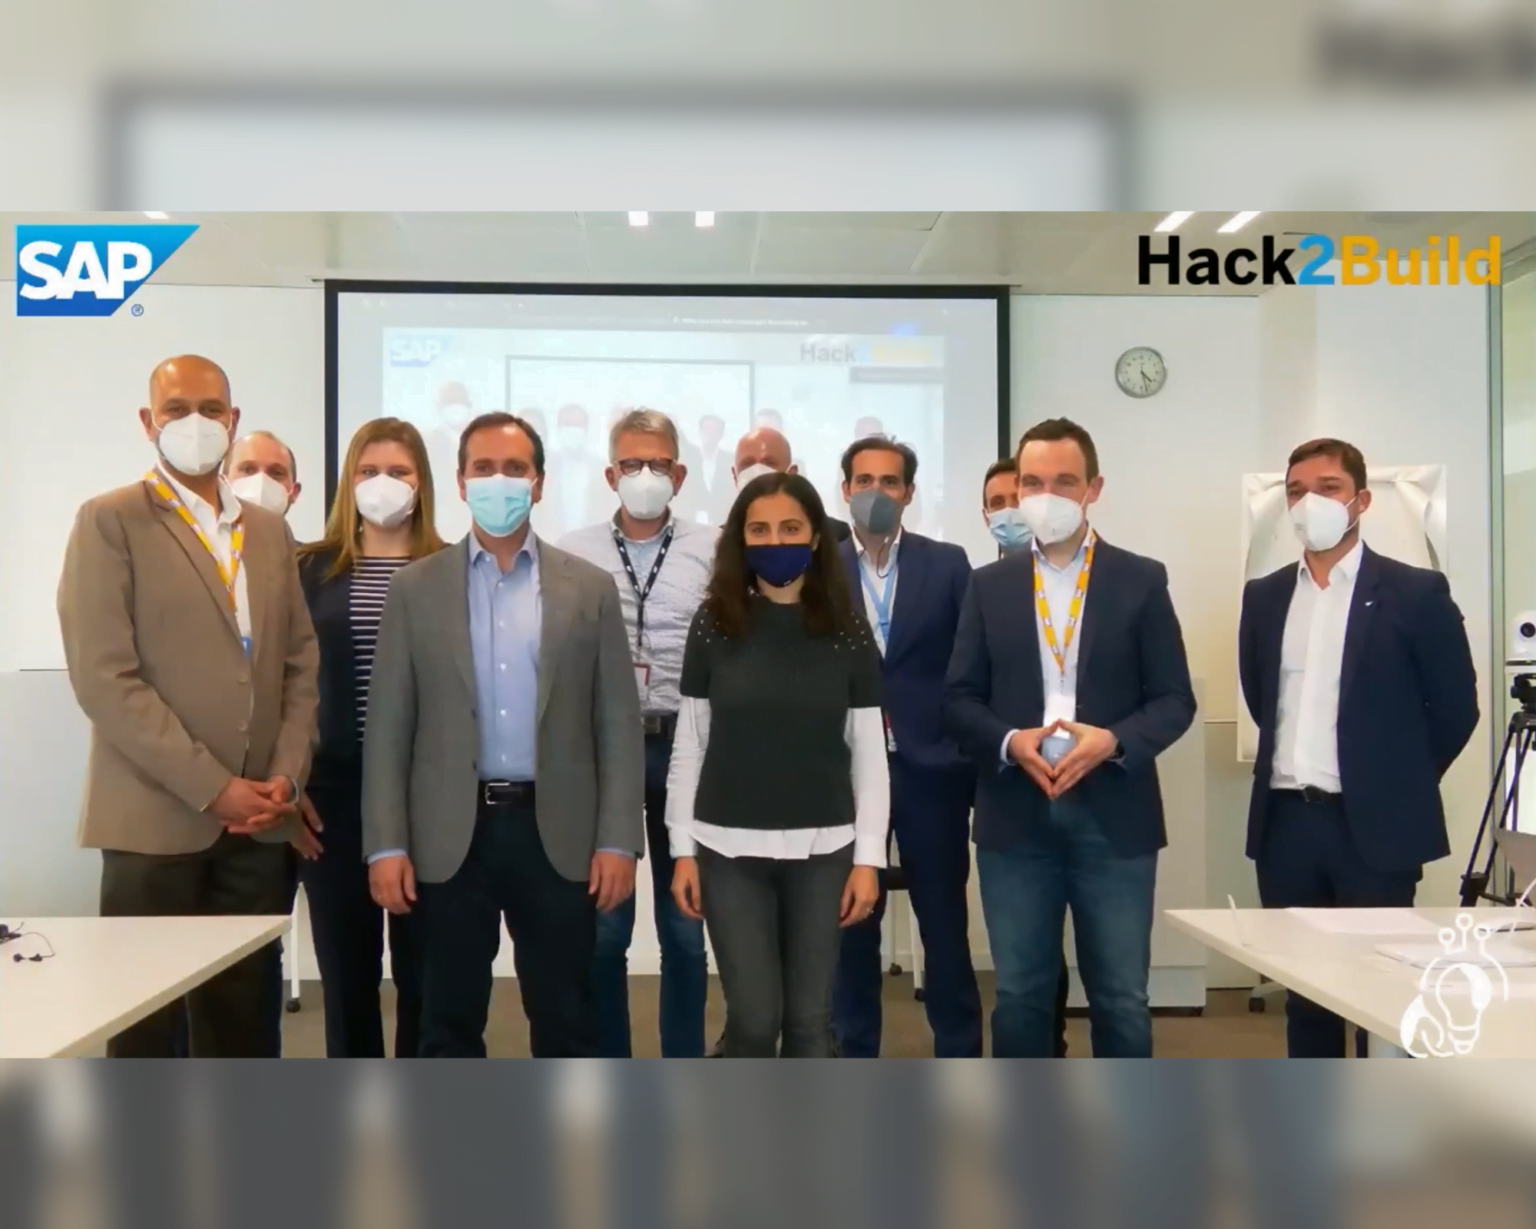 Teilnehmer des Hack2Builds (onsite)